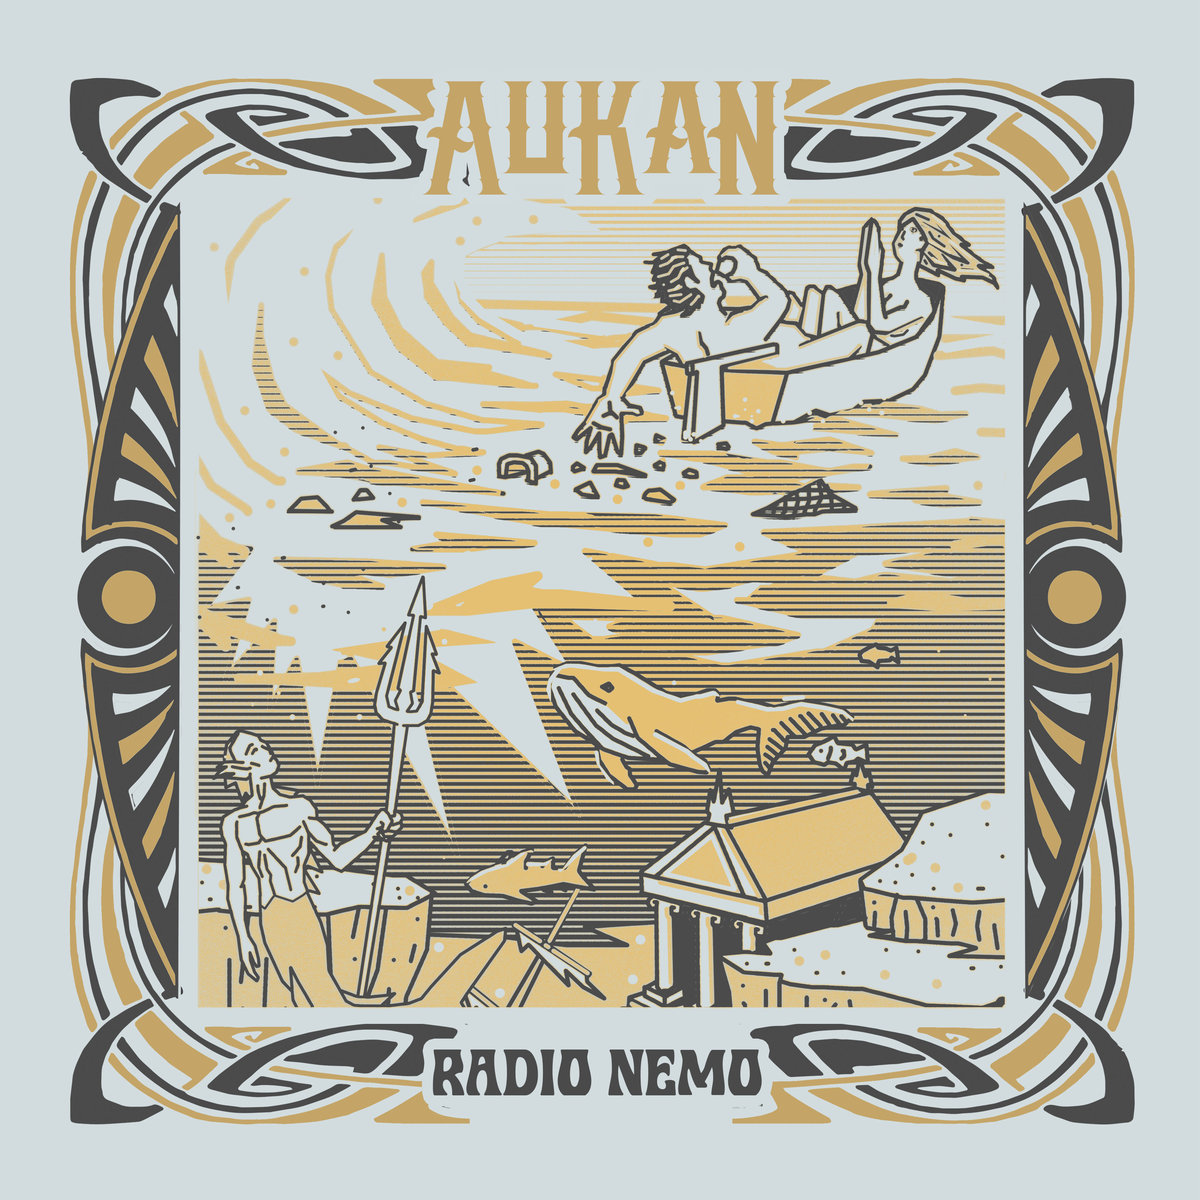 Radio_nemo_aukan